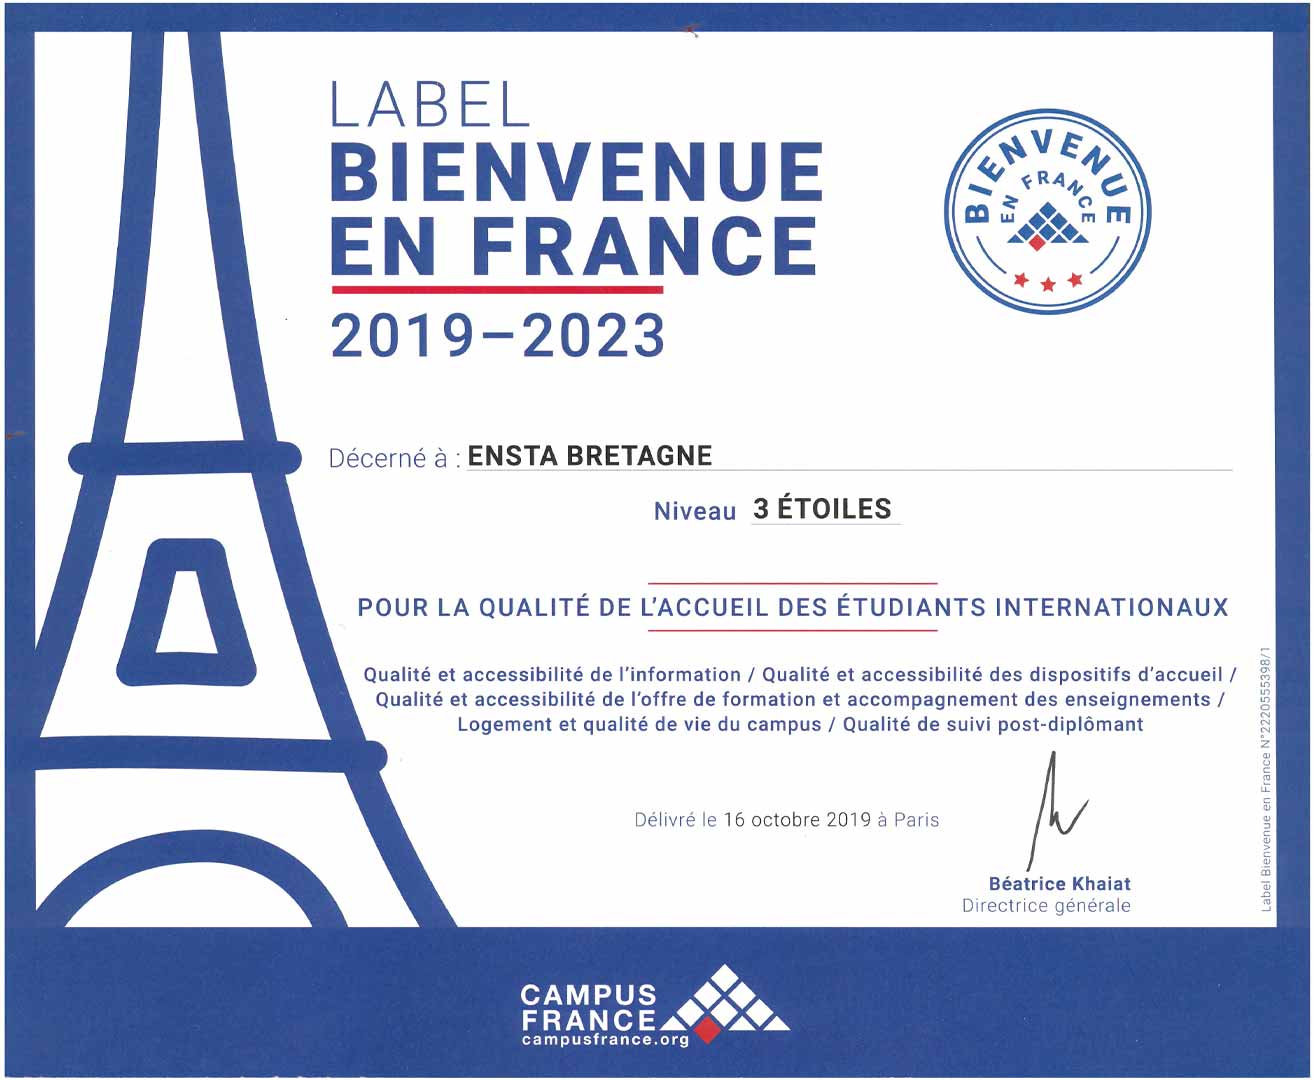 ENSTA Bretagne : labellisée "Bienvenue en France" 3 étoiles pour l'accueil des ses étudiants internationaux